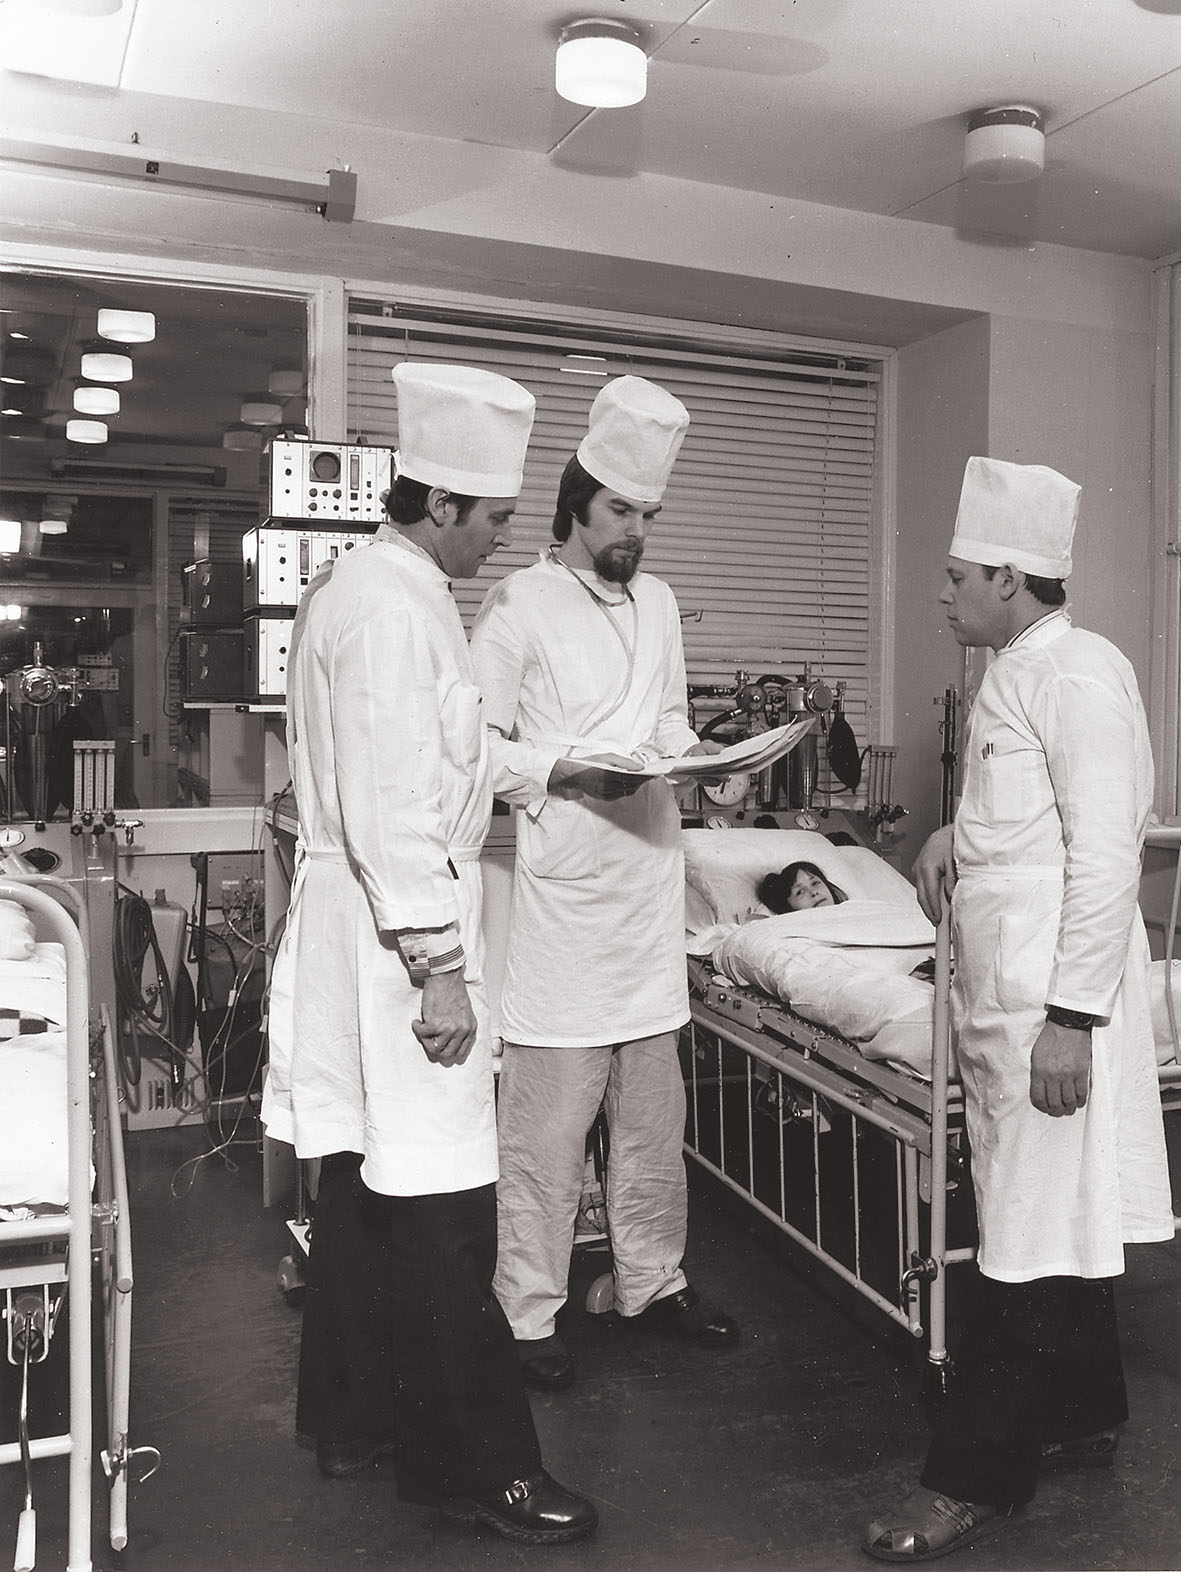 Pirms iesaistes politikā —  P. Stradiņa RKS Reanimācijas klīnikā  ar ārstiem Pēteri Ošu un Ivaru Krastiņu.  1989. gads